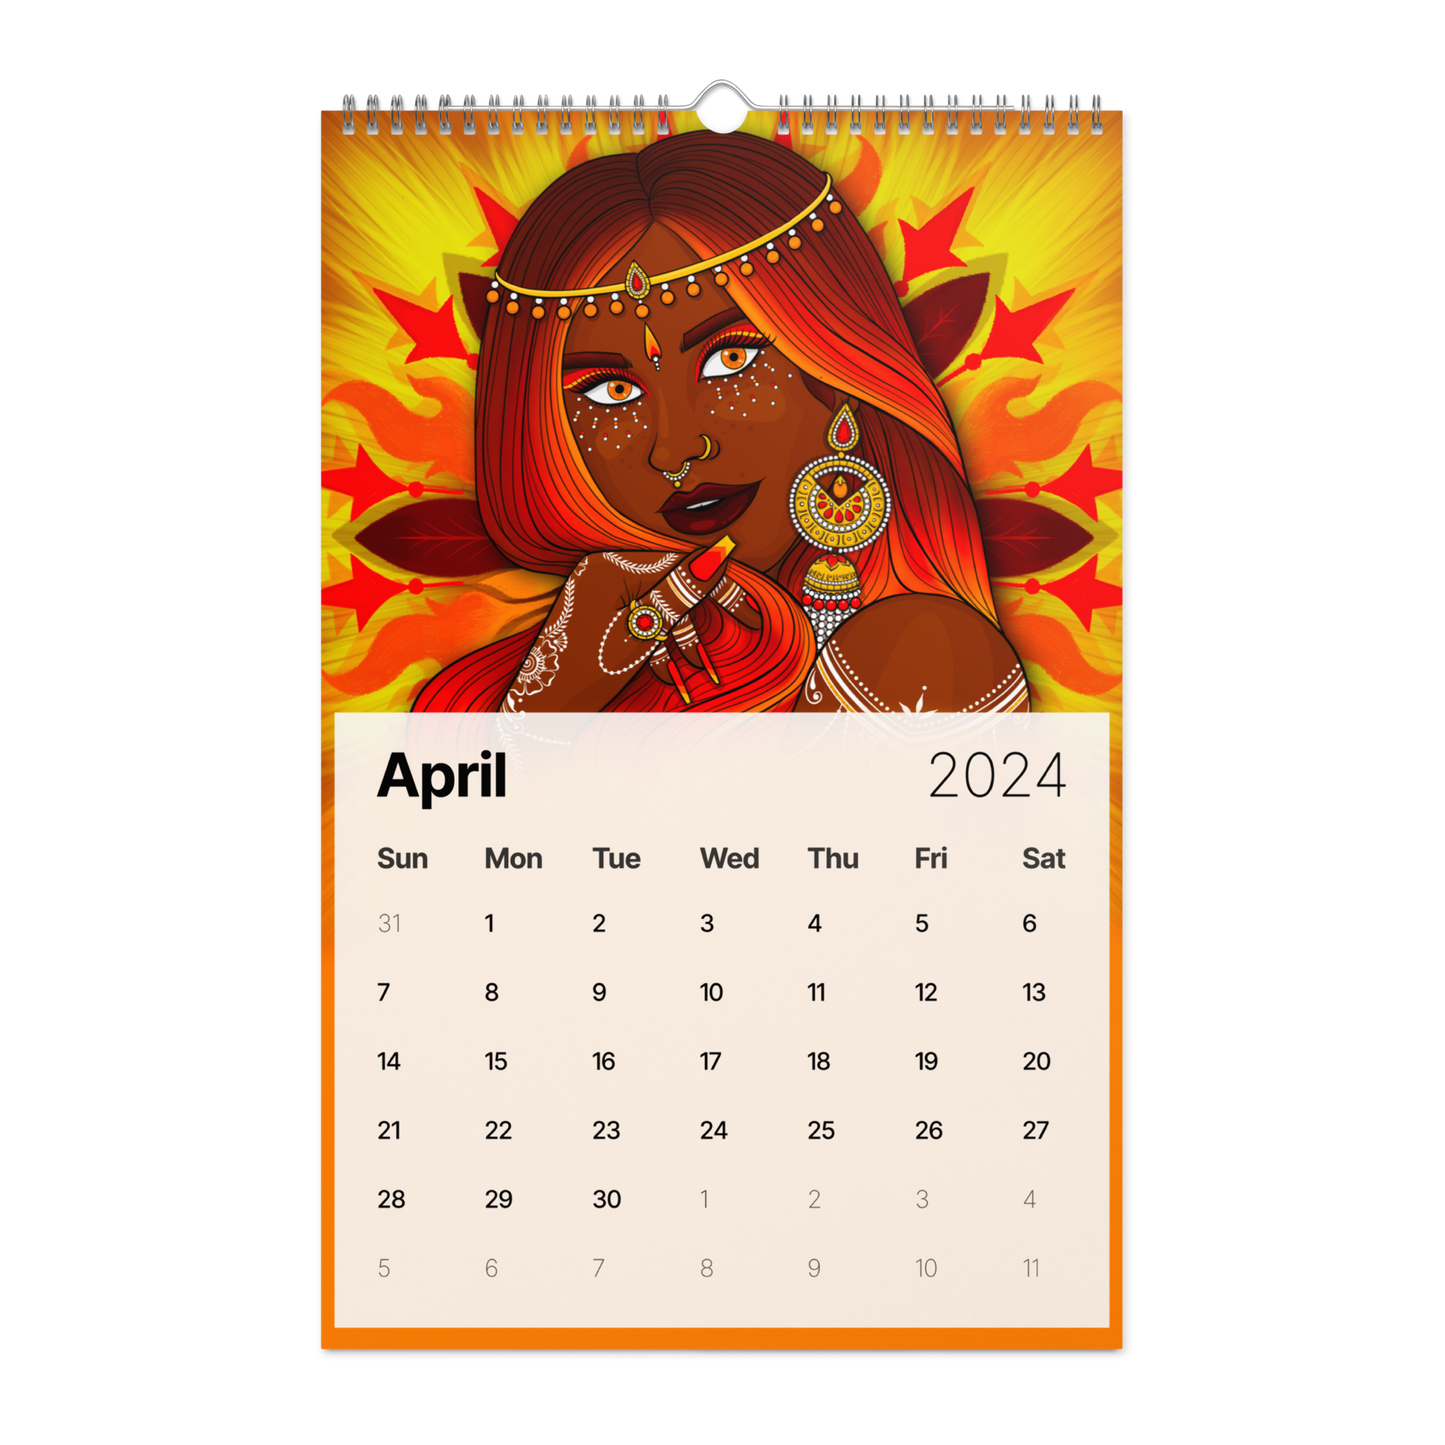 ZenTee - Wall calendar (2024)